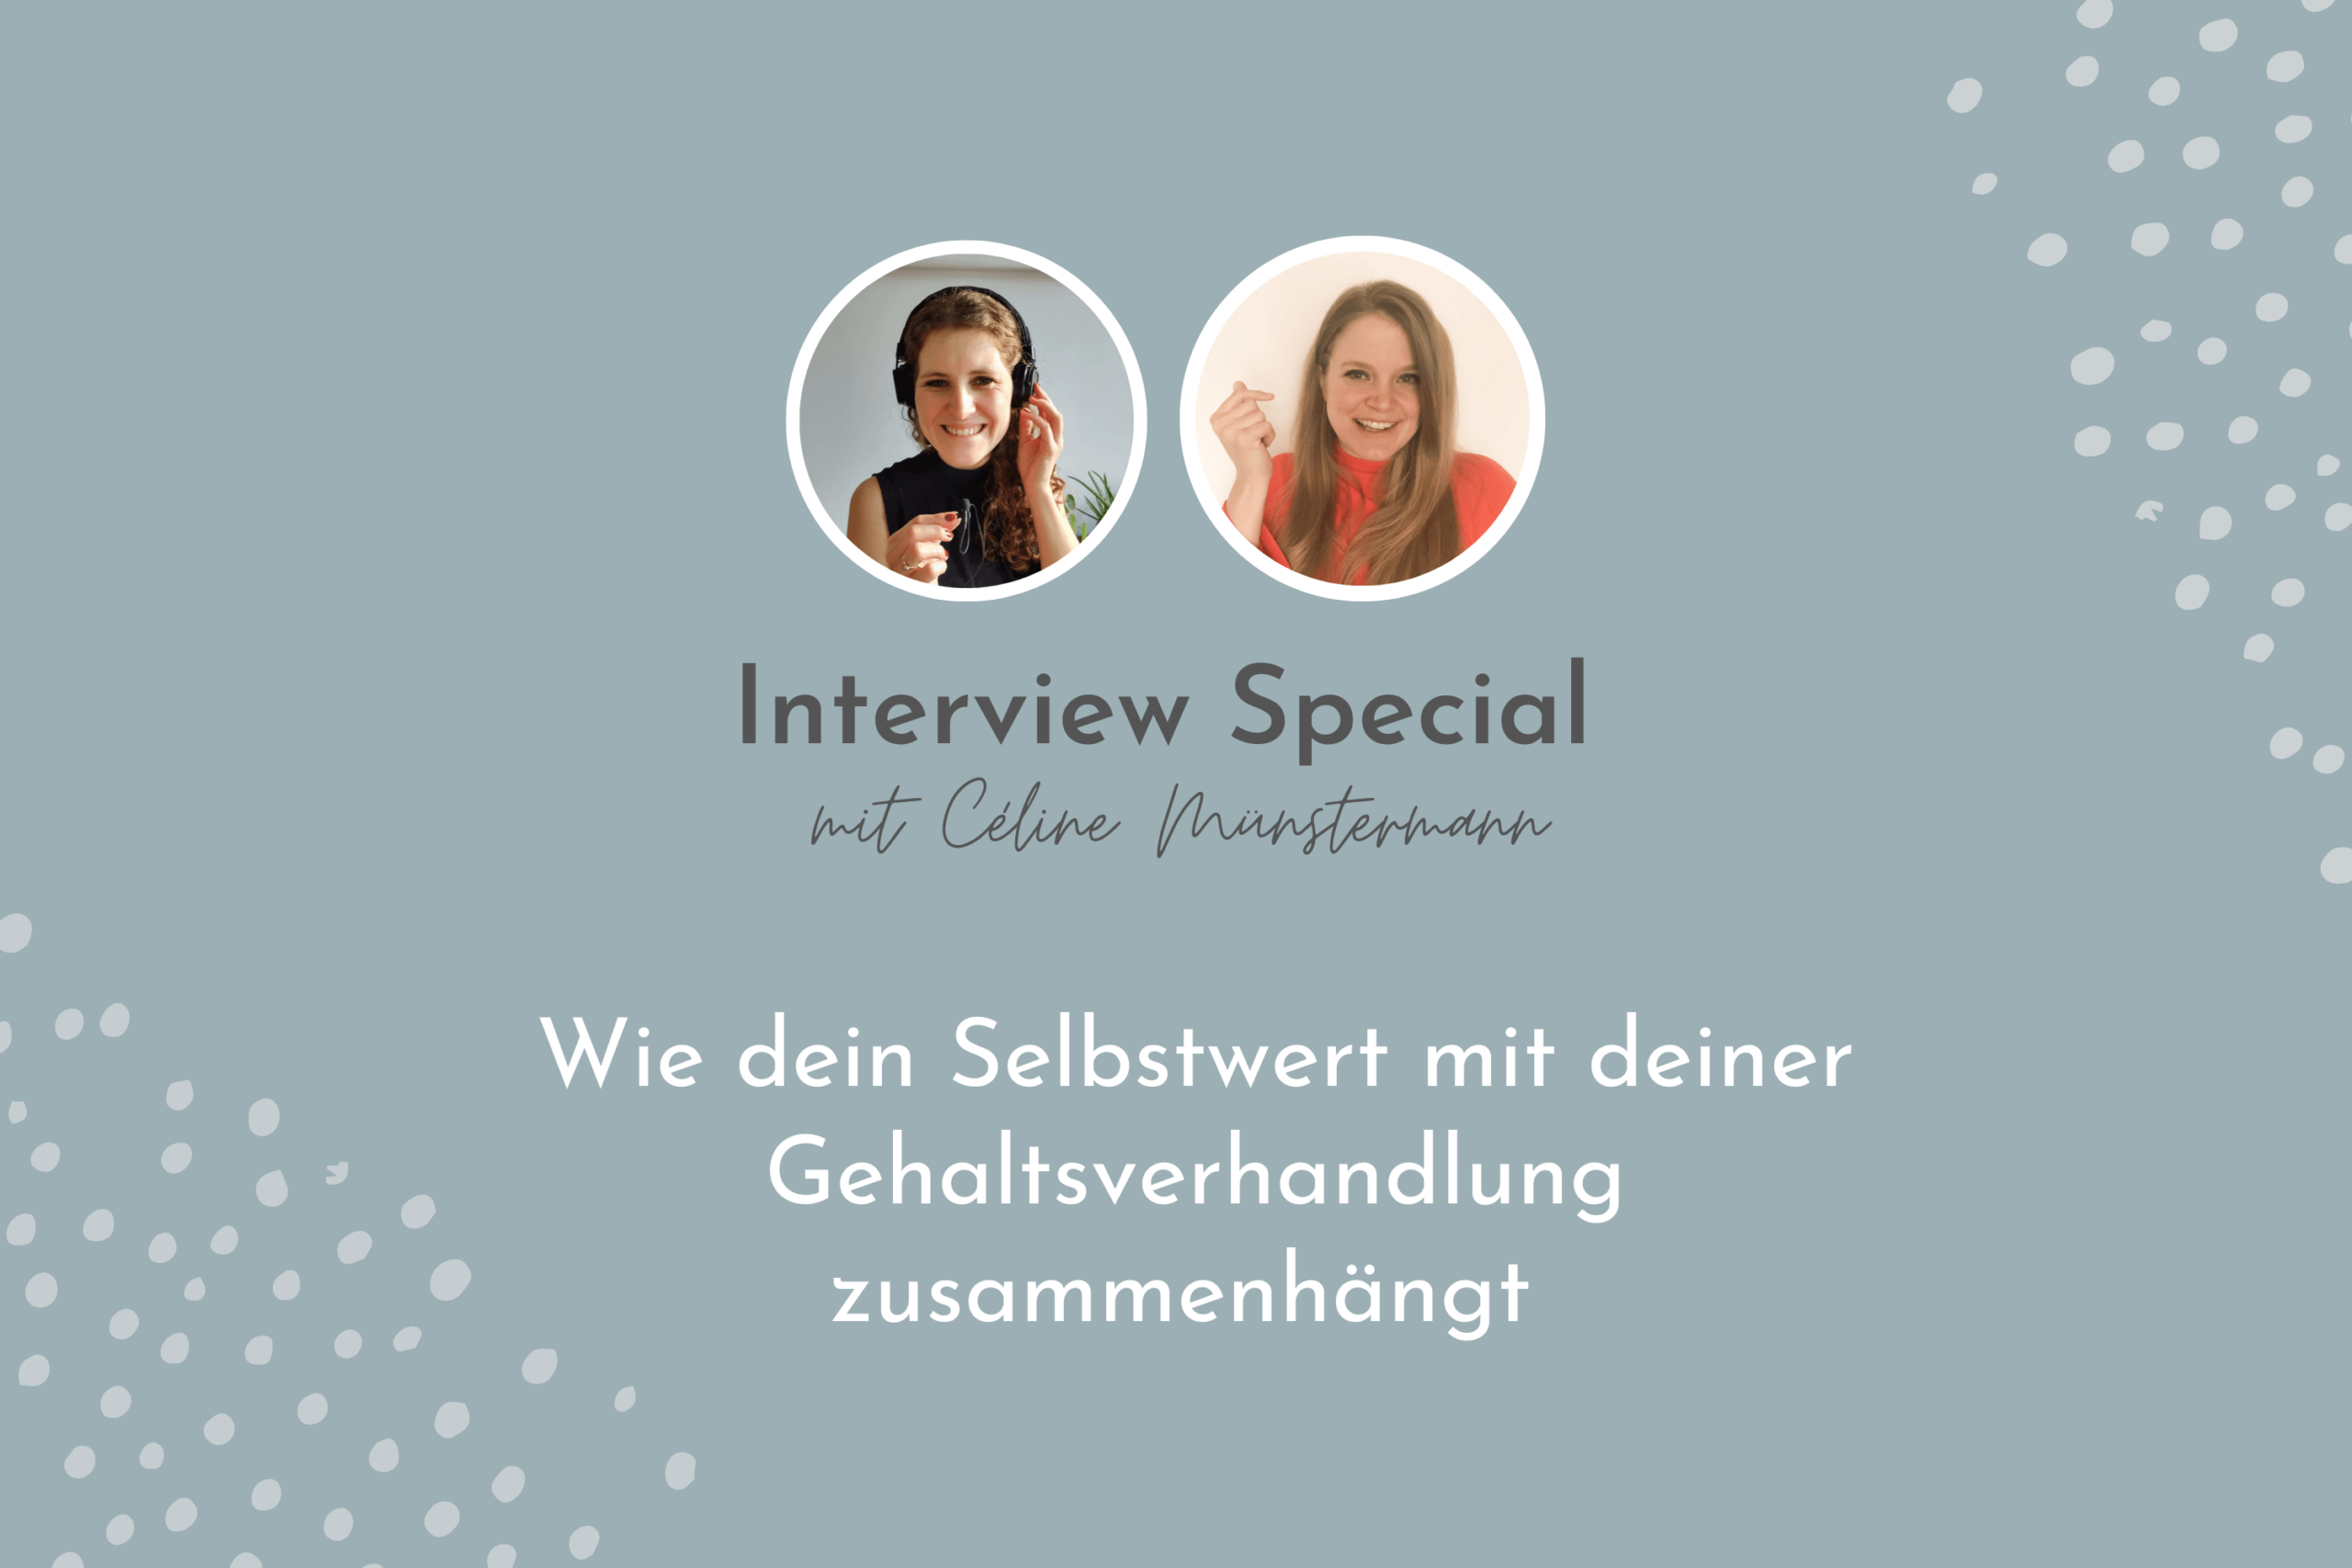 Interview von Insa Uhlenkamp und Céline Münstermann zu Gehaltsverhandlung und Selbstwert